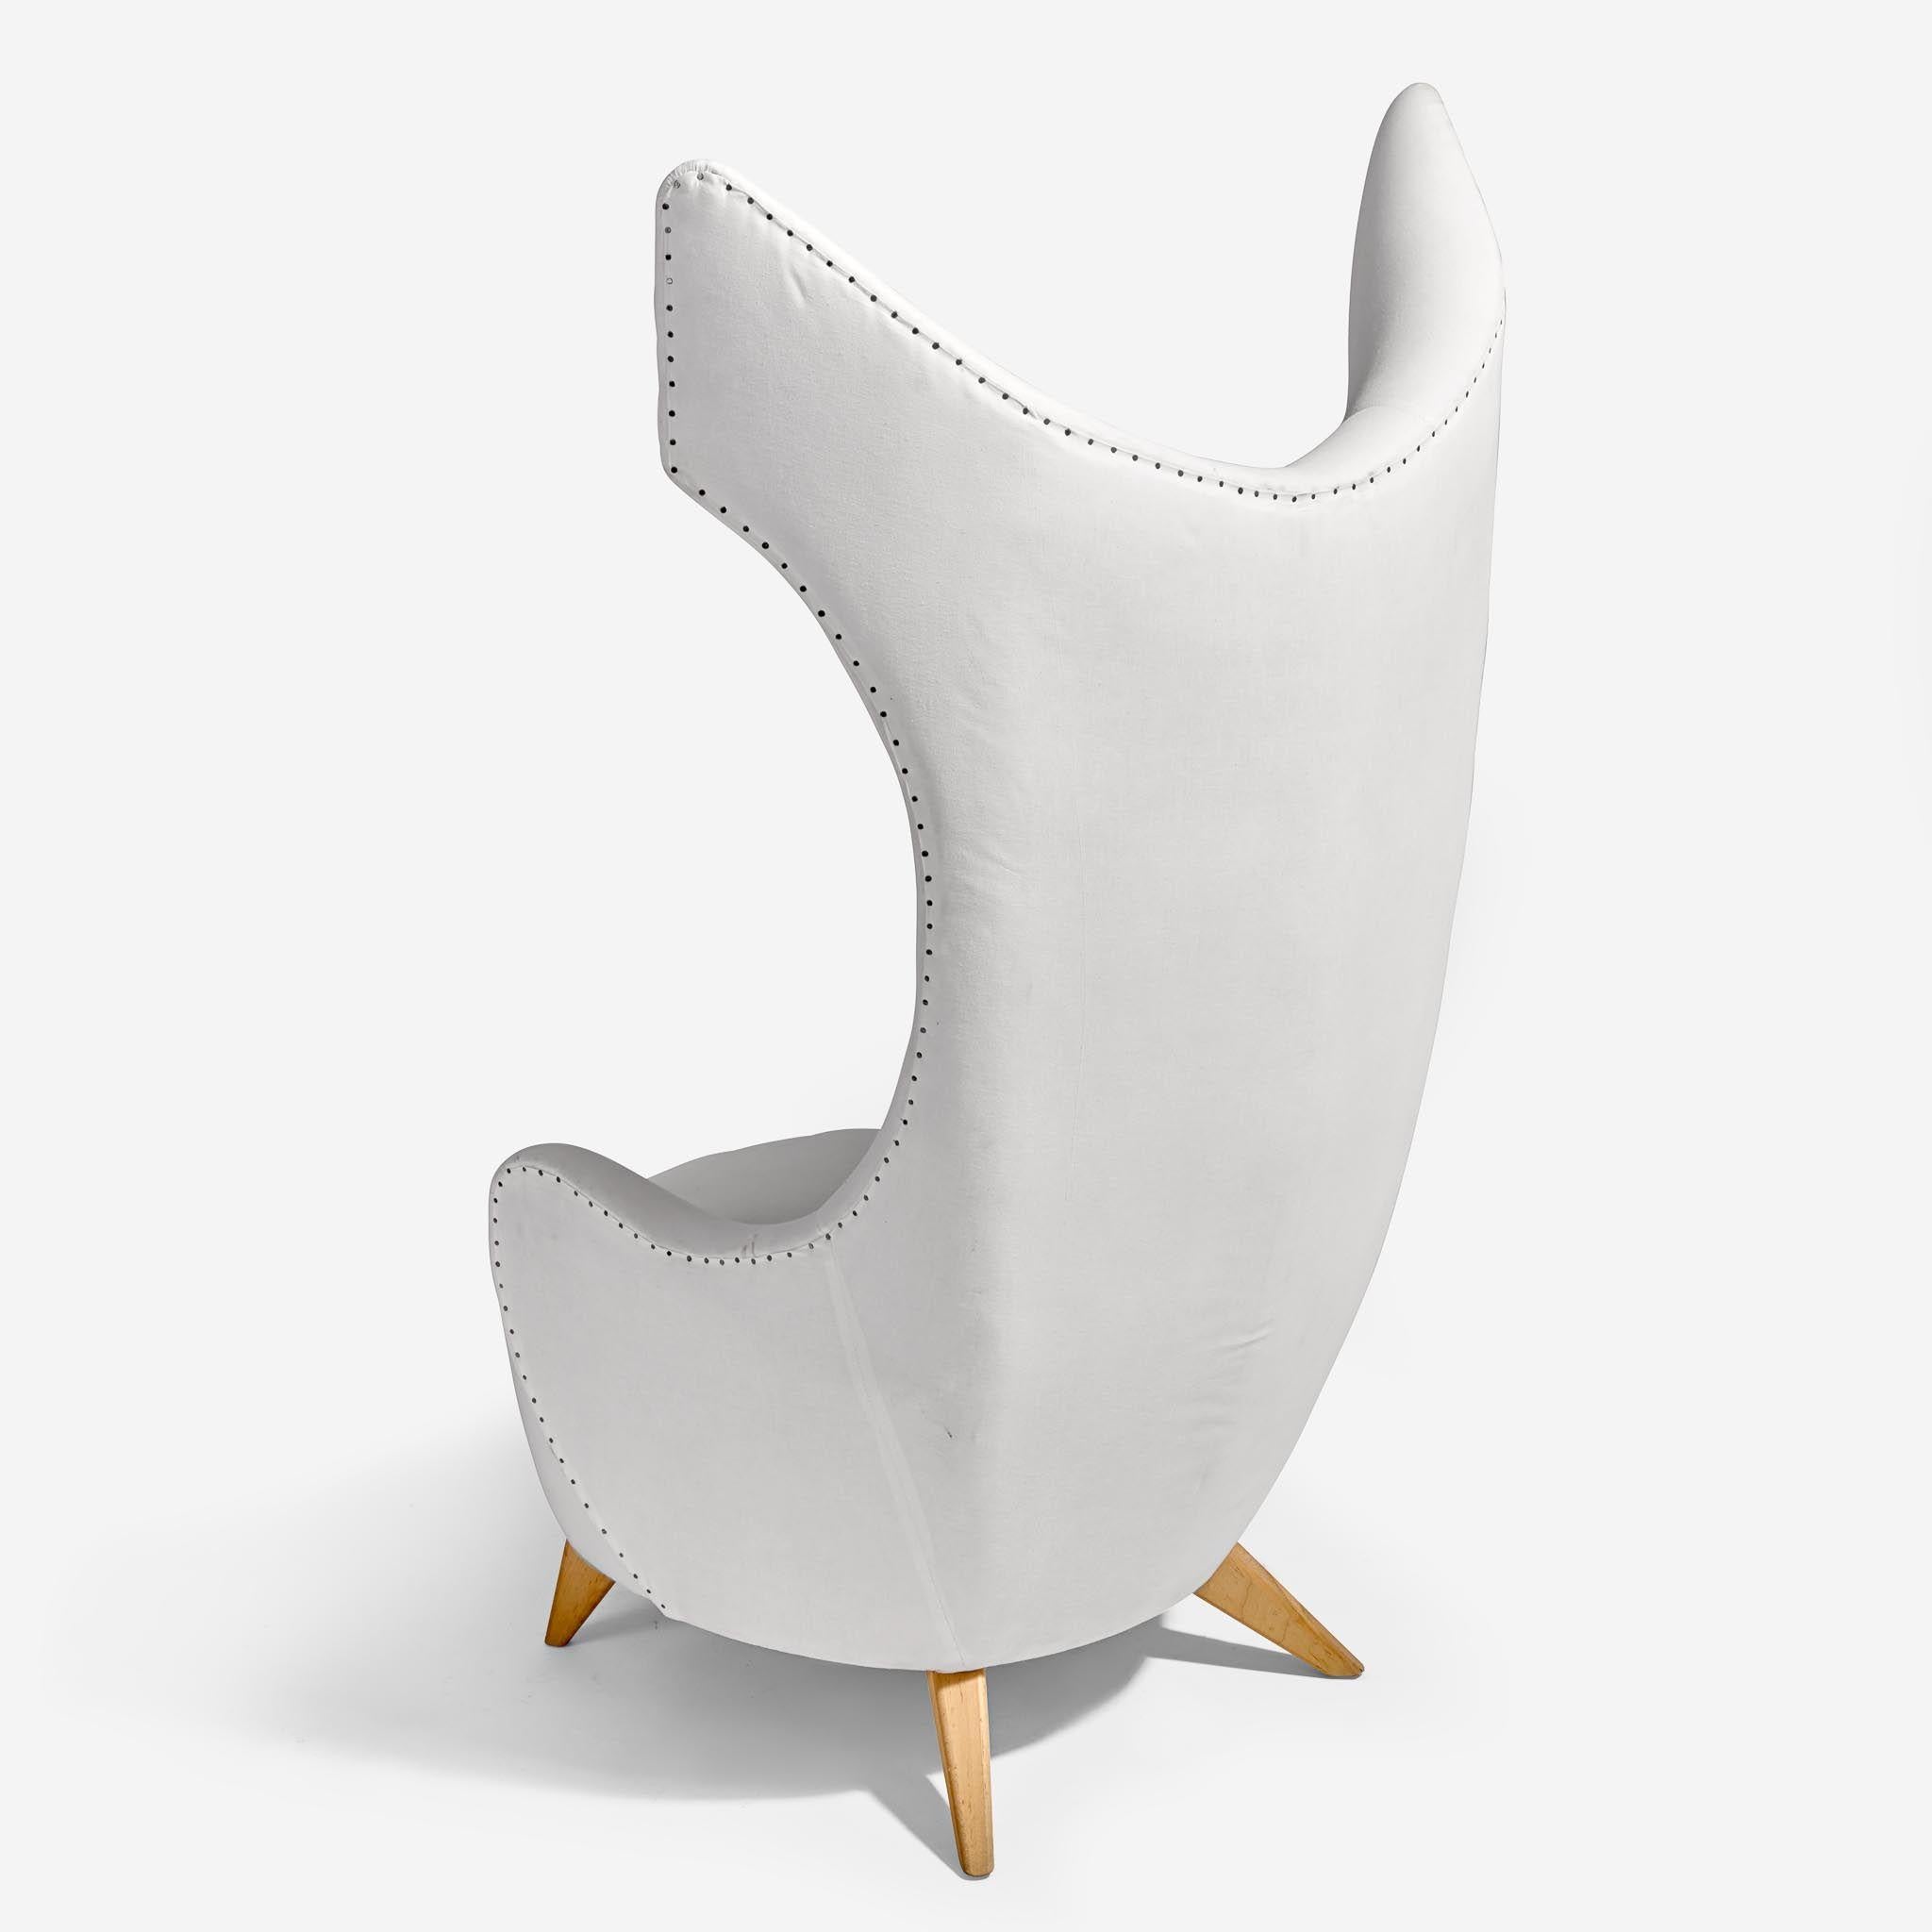 Außergewöhnlicher und einzigartiger Stuhl mit dramatischer Rückenlehne, entworfen von Vladimir Kagan für Baroness Lambert. Kurz vor Kagans Tod hatte die Baronin um die Fertigstellung der beiden Stühle gebeten. Die Stühle dienten als Vorbild für